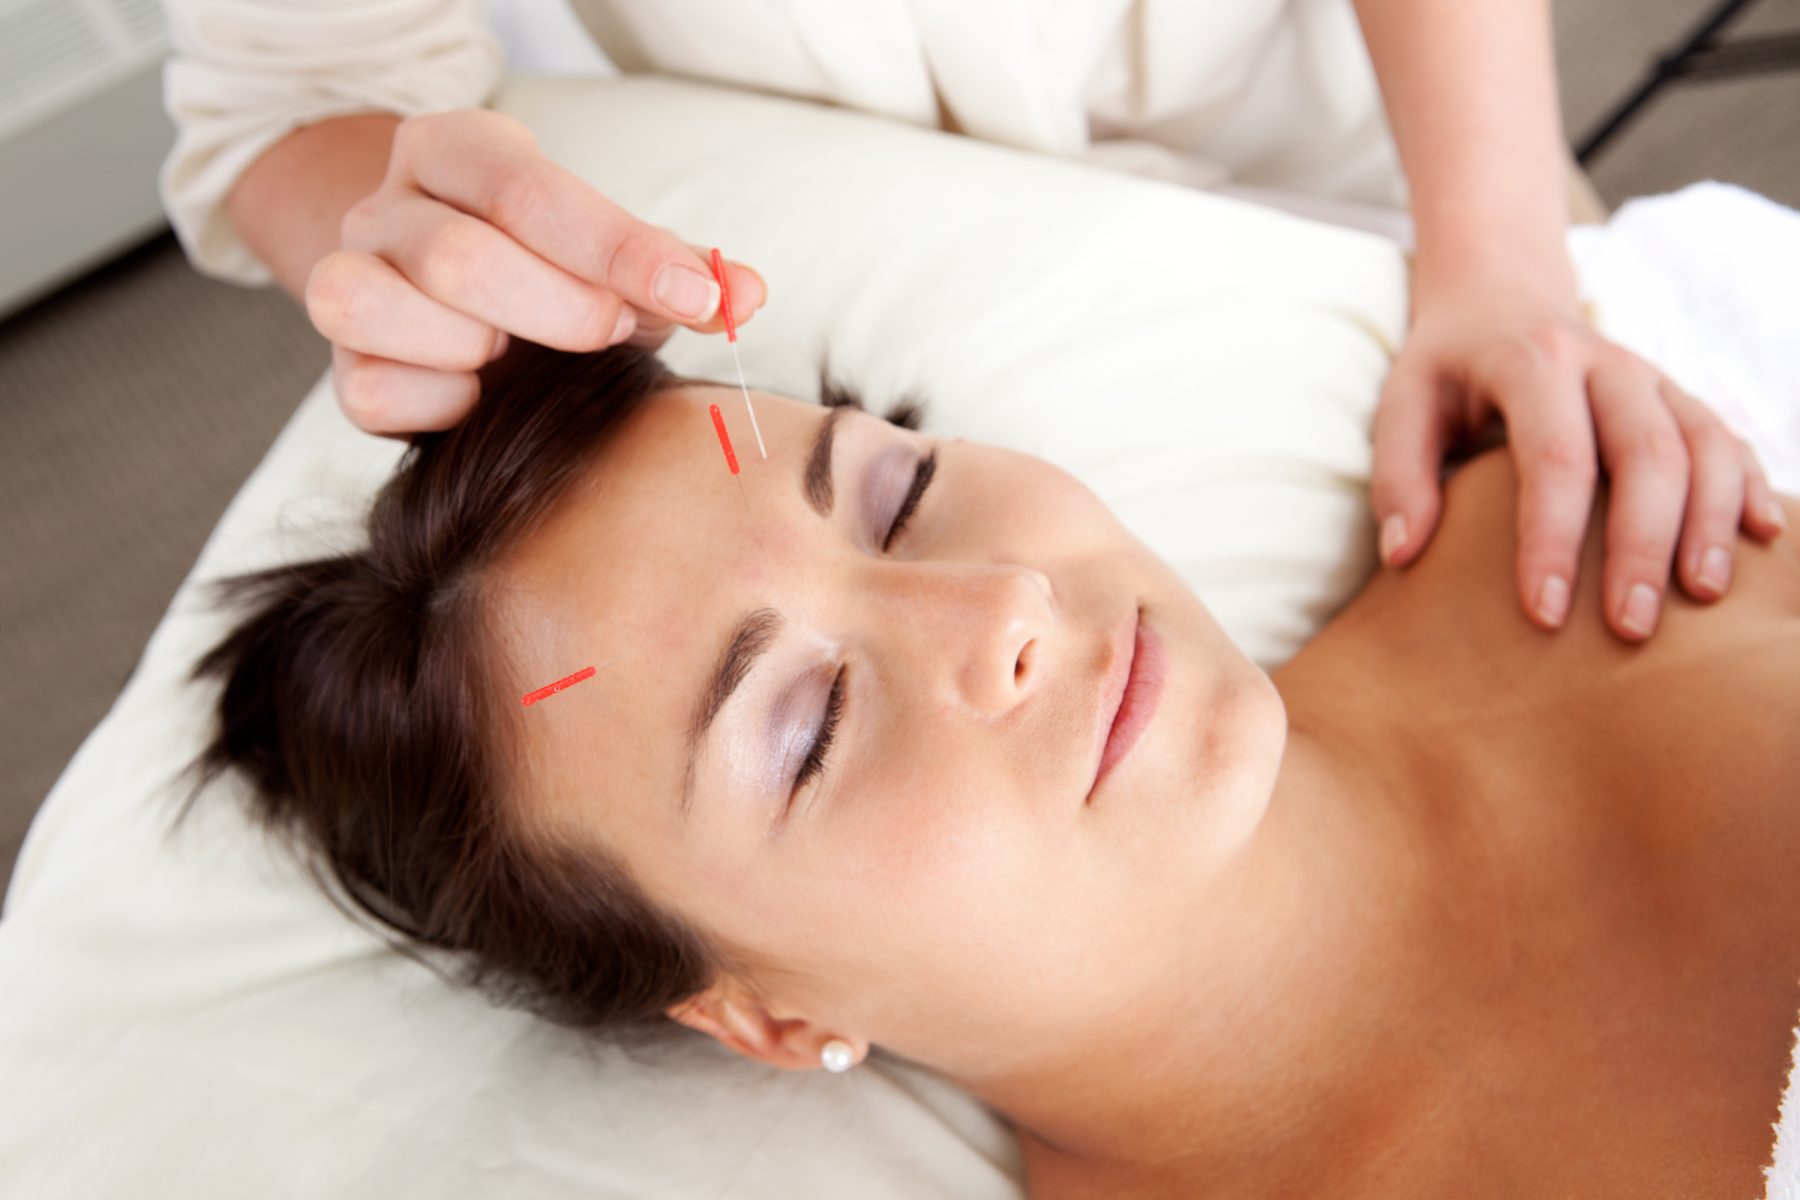 The Acupuncture Facial Phenomenon